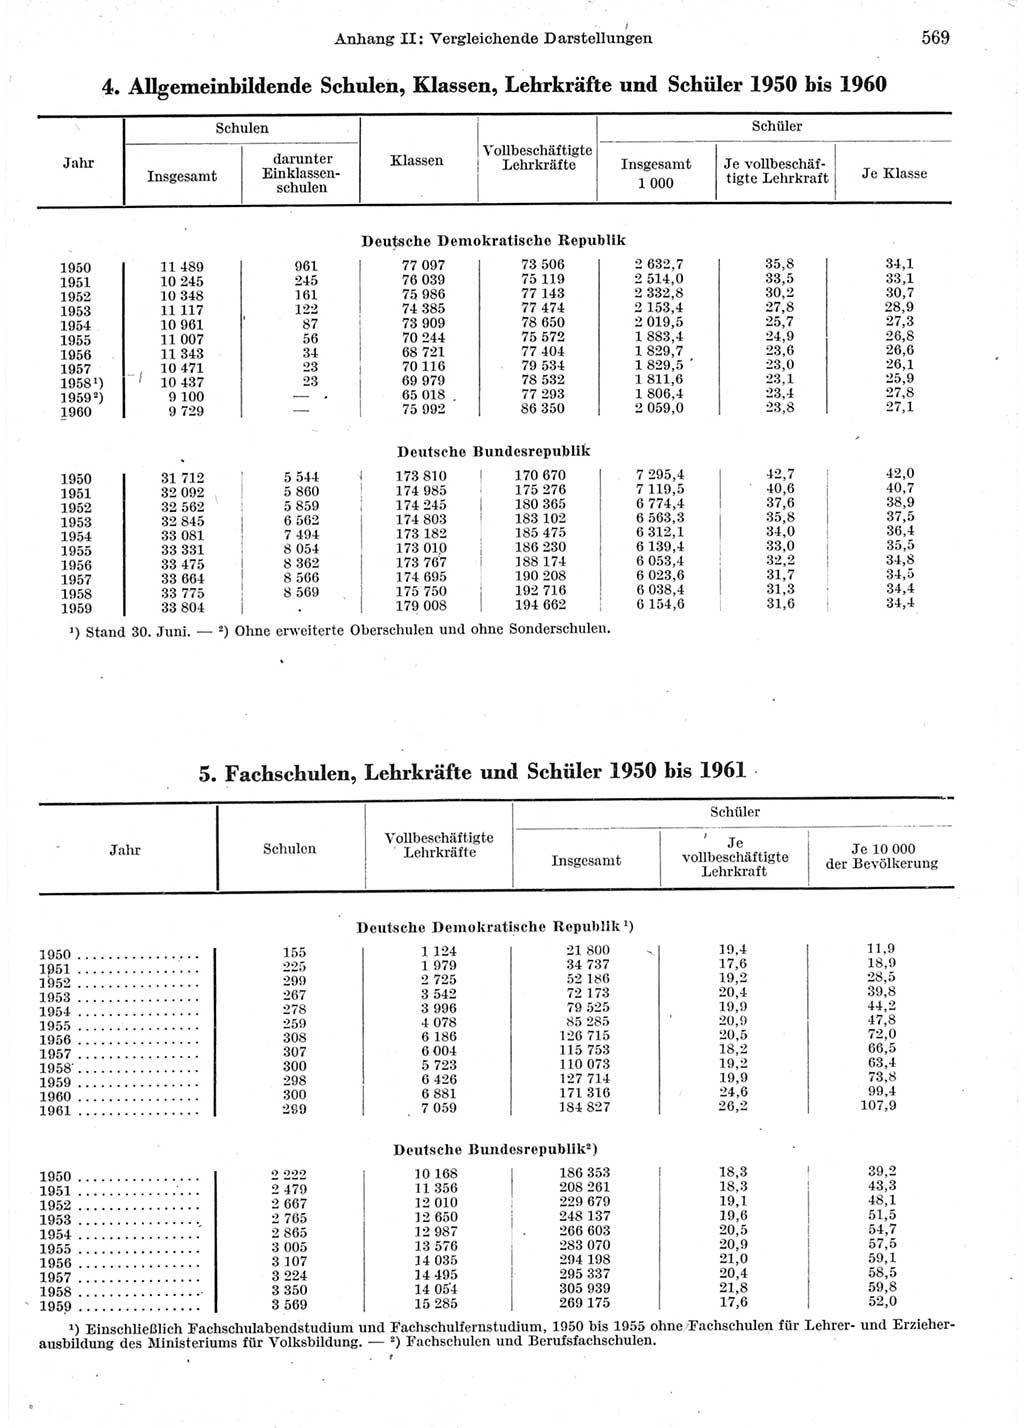 Statistisches Jahrbuch der Deutschen Demokratischen Republik (DDR) 1962, Seite 569 (Stat. Jb. DDR 1962, S. 569)